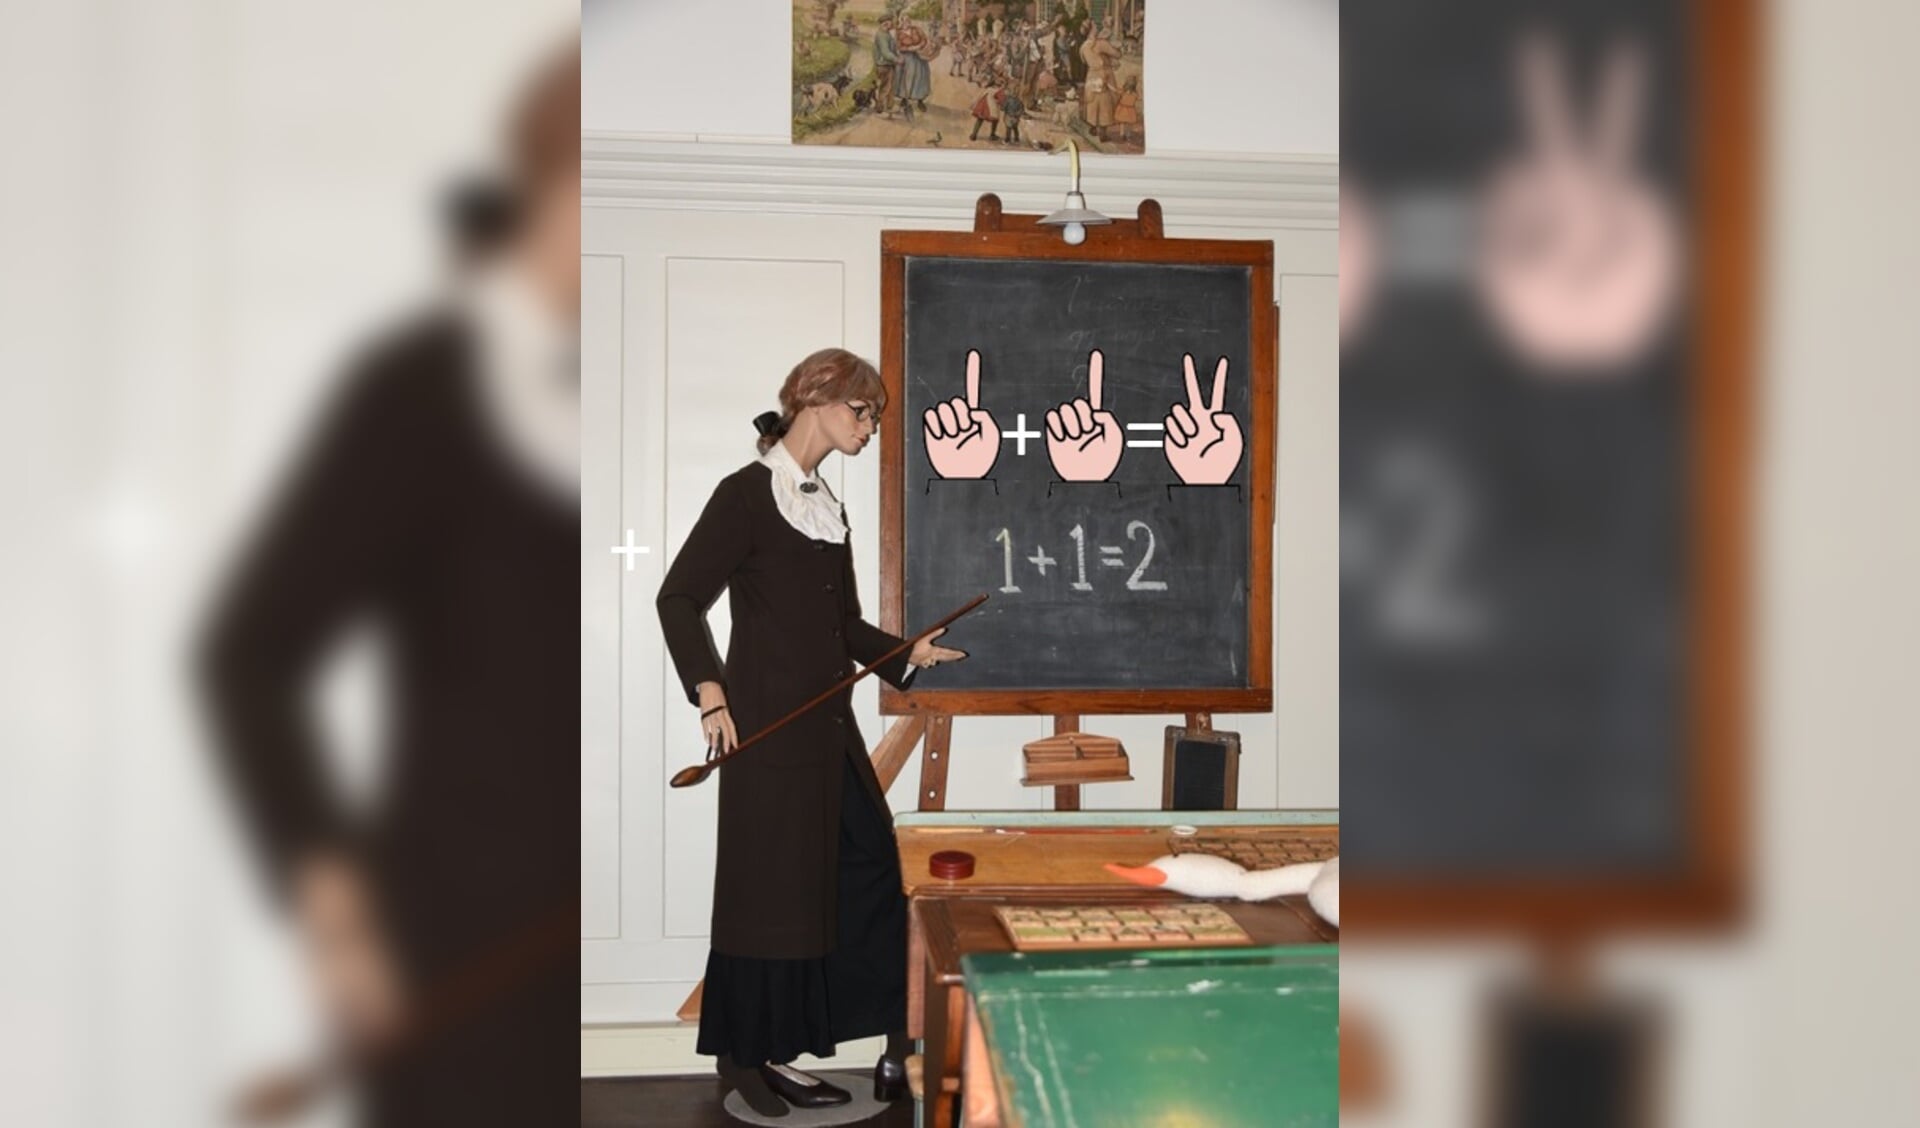 Op 30 maart gaat de wisselexpositie met als titel ‘1+1=2’, rekenen door de eeuwen heen, van start in Museum Schooltijd in Terneuzen. 